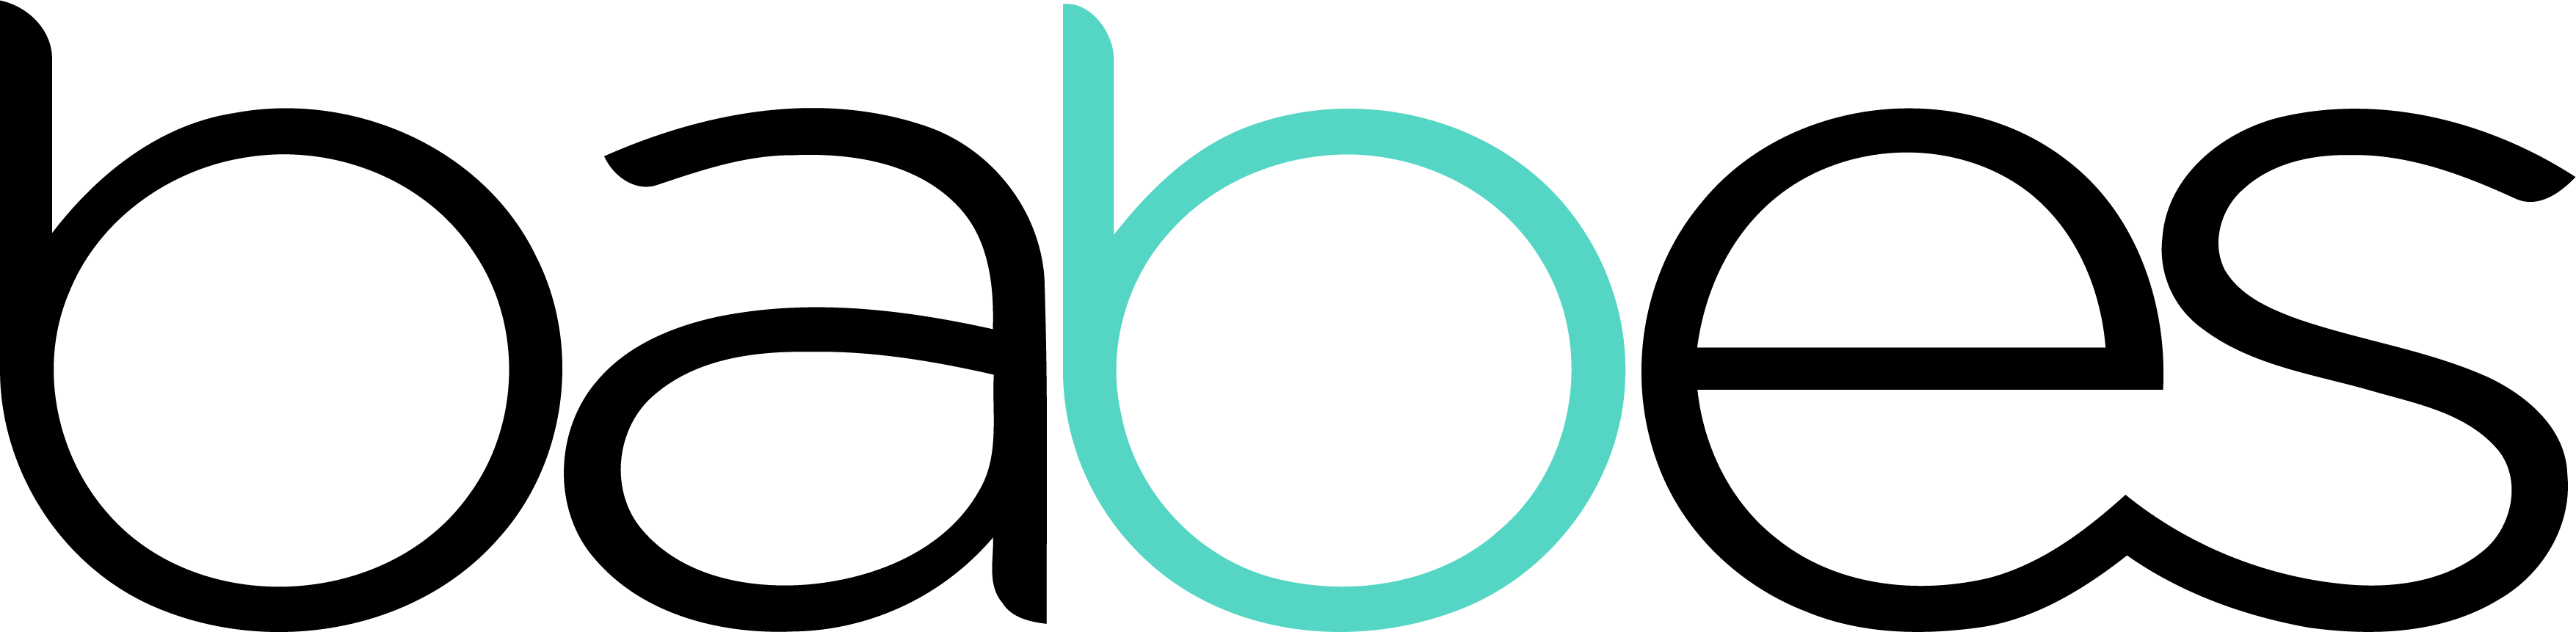 logo della rete babes